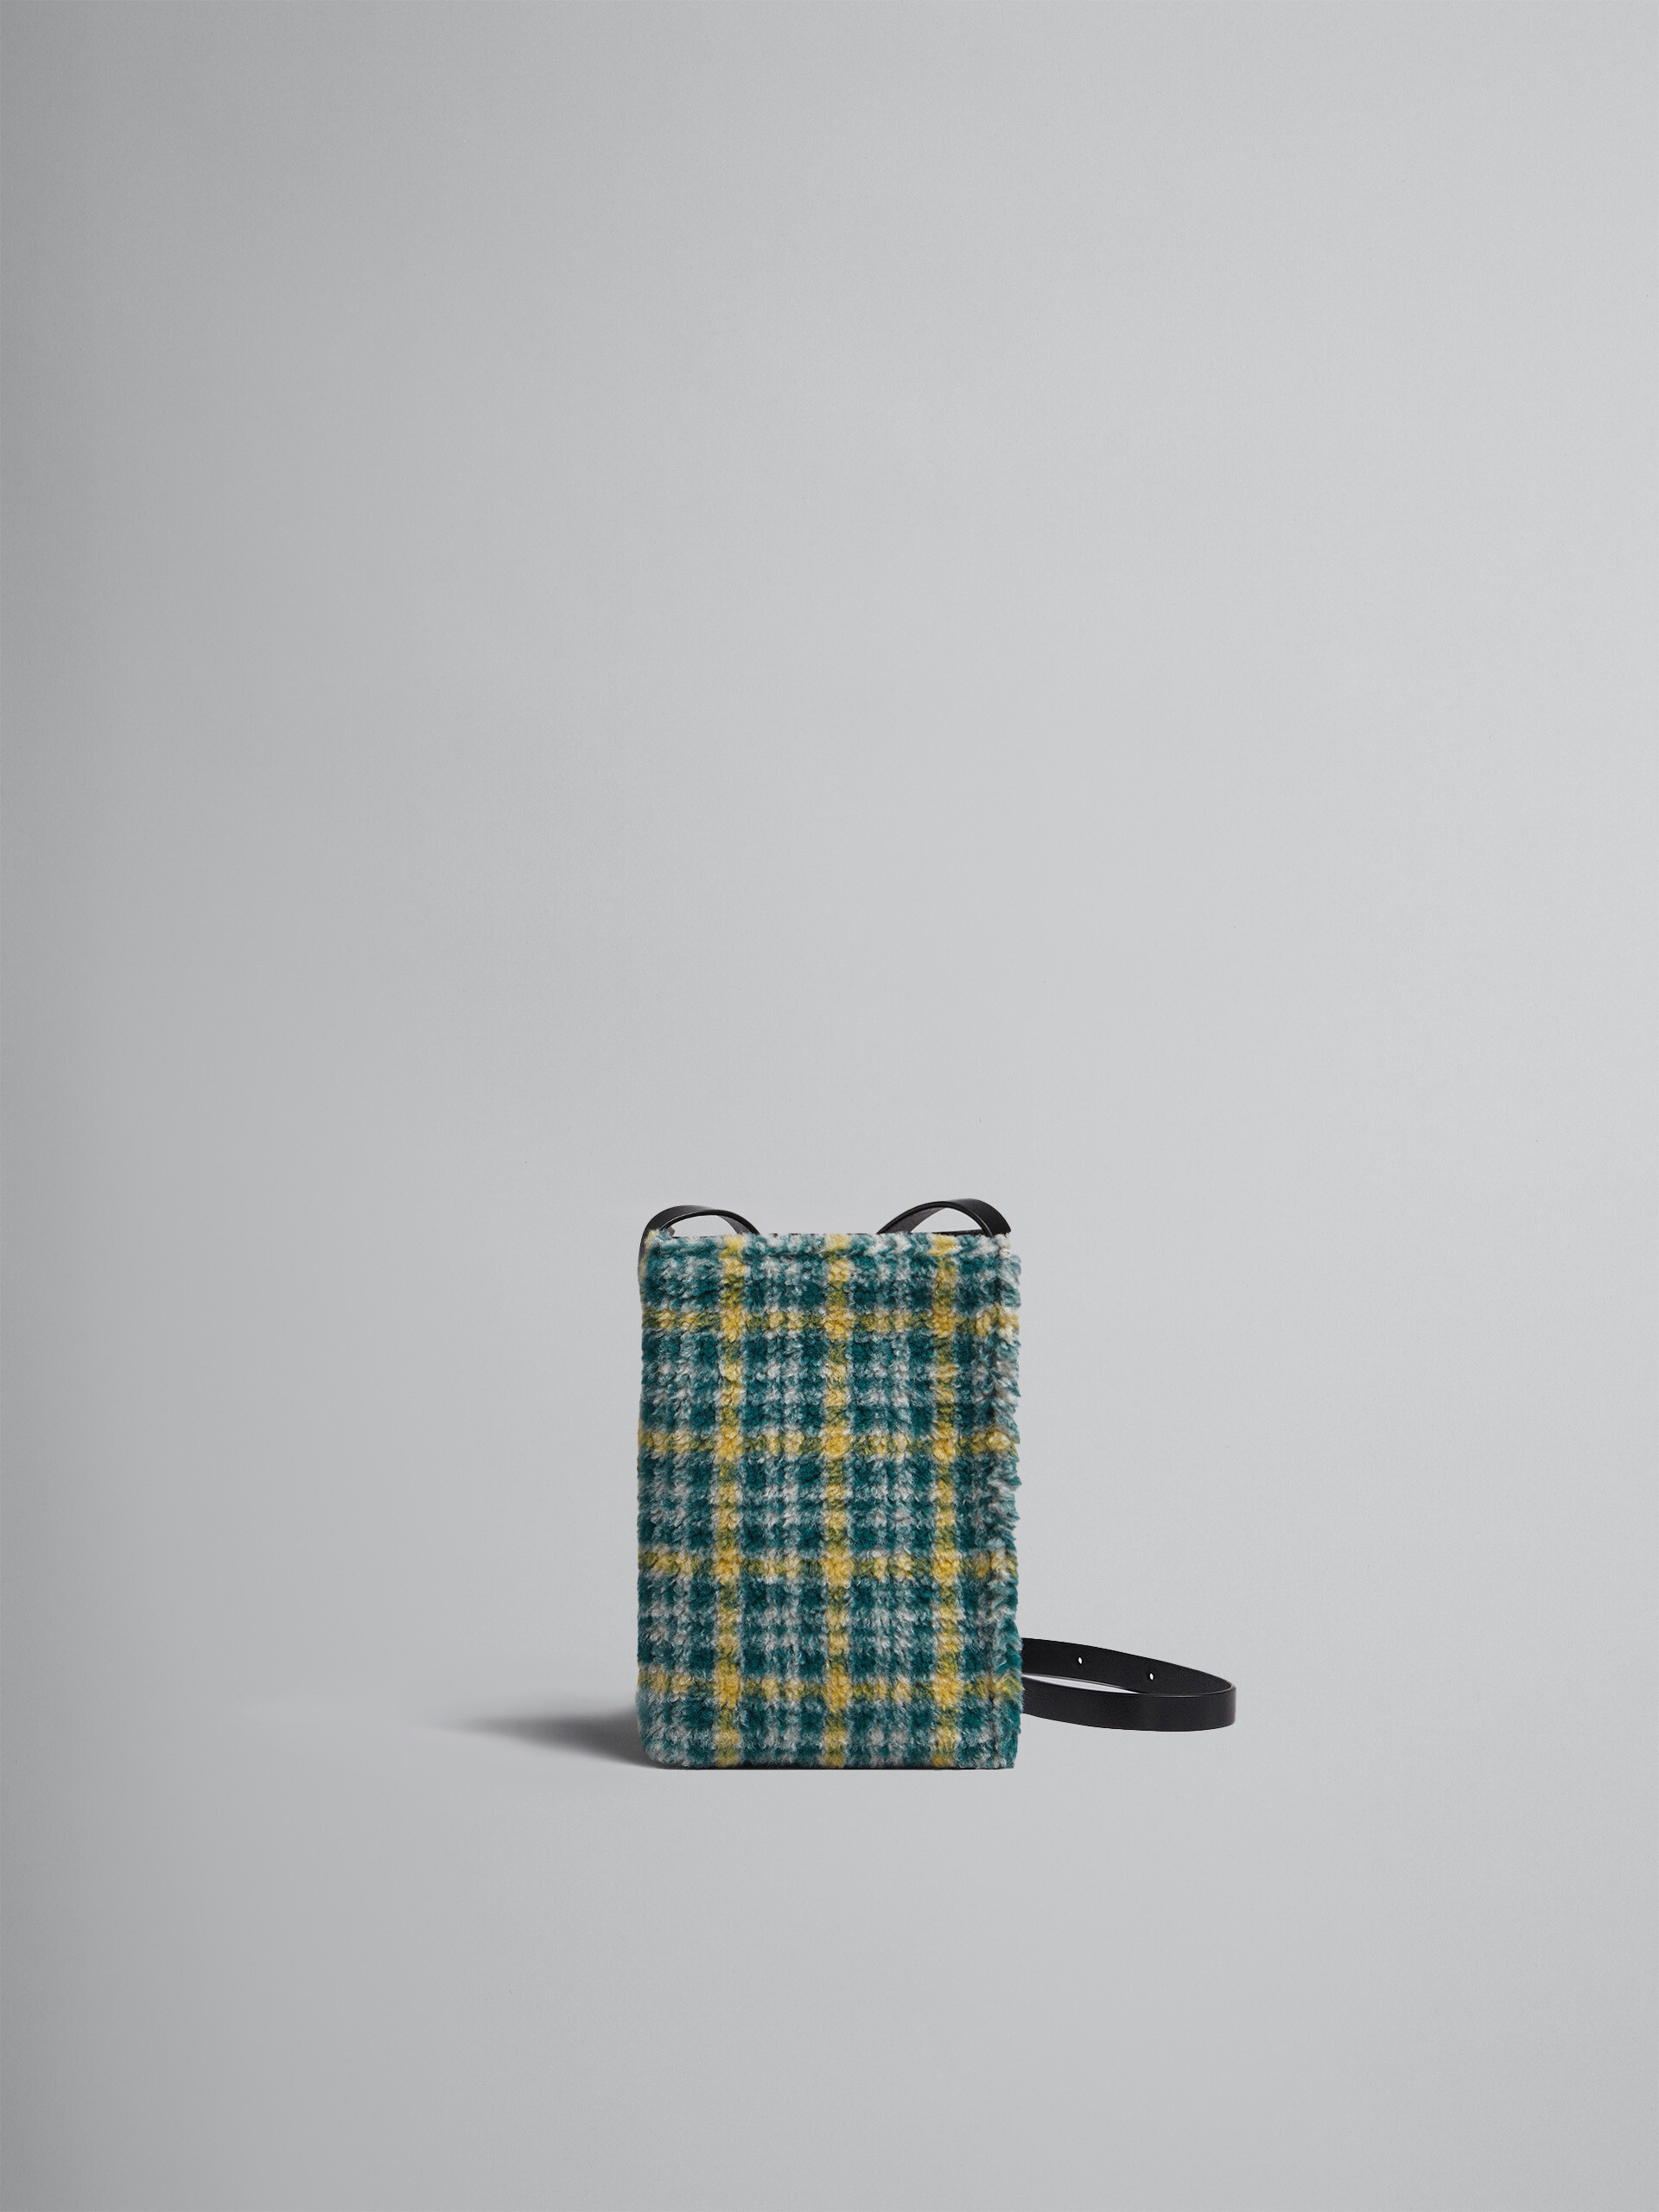 MUSEO SOFT bag piccola in tessuto check verde - Borse a spalla - Image 1